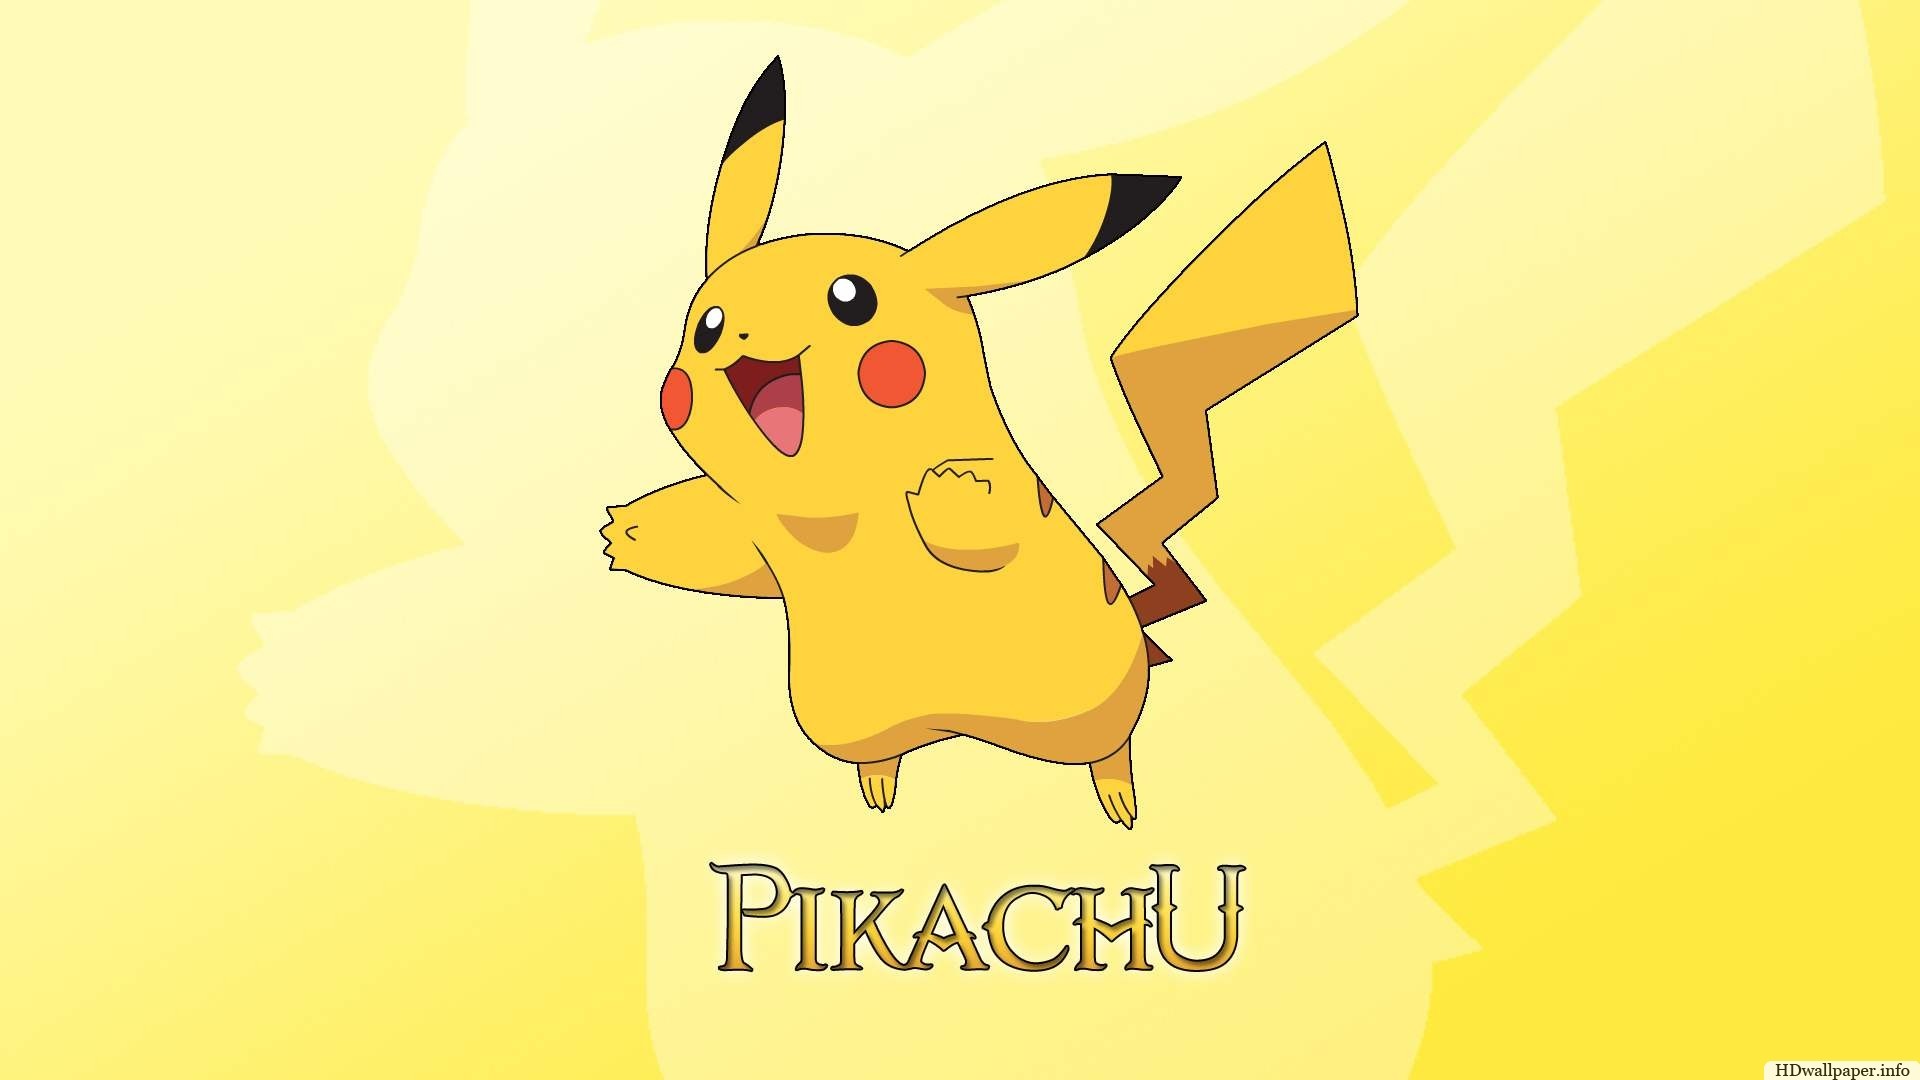 Pikachu wallpaper cute id 3335 / credit